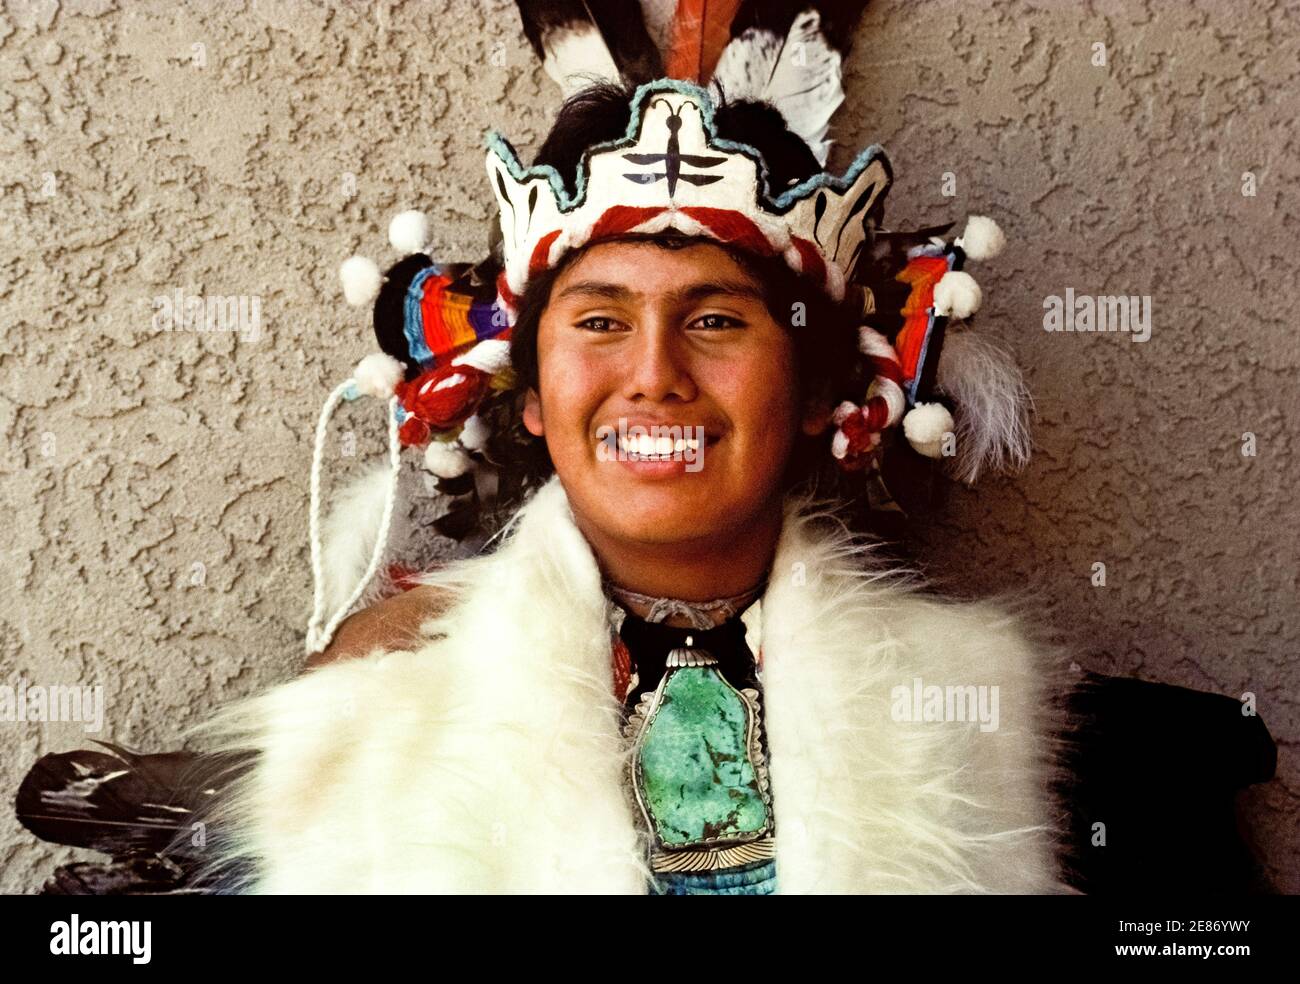 Un giovane nativo americano posa in abito cerimoniale durante una celebrazione della cultura indiana da parte delle popolazioni indigene d'America che si sono radunate per ballare, cantare e onorare le tradizioni dei loro antenati. La Powowow si è tenuta ad Albuquerque, New Mexico, USA, presso il Centro Culturale indiano Pueblo, una vetrina per le tribù Pueblo in quello stato sudoccidentale. L'elaborato headdress dell'uomo presenta un'immagine di una libellula, una creatura vista come un messaggero che parla al tuono e alle nubi per portare l'umidità e le benedizioni al popolo Pueblo. Anche la sua collana con una grande gemma turchese cattura l'occhio. Foto Stock